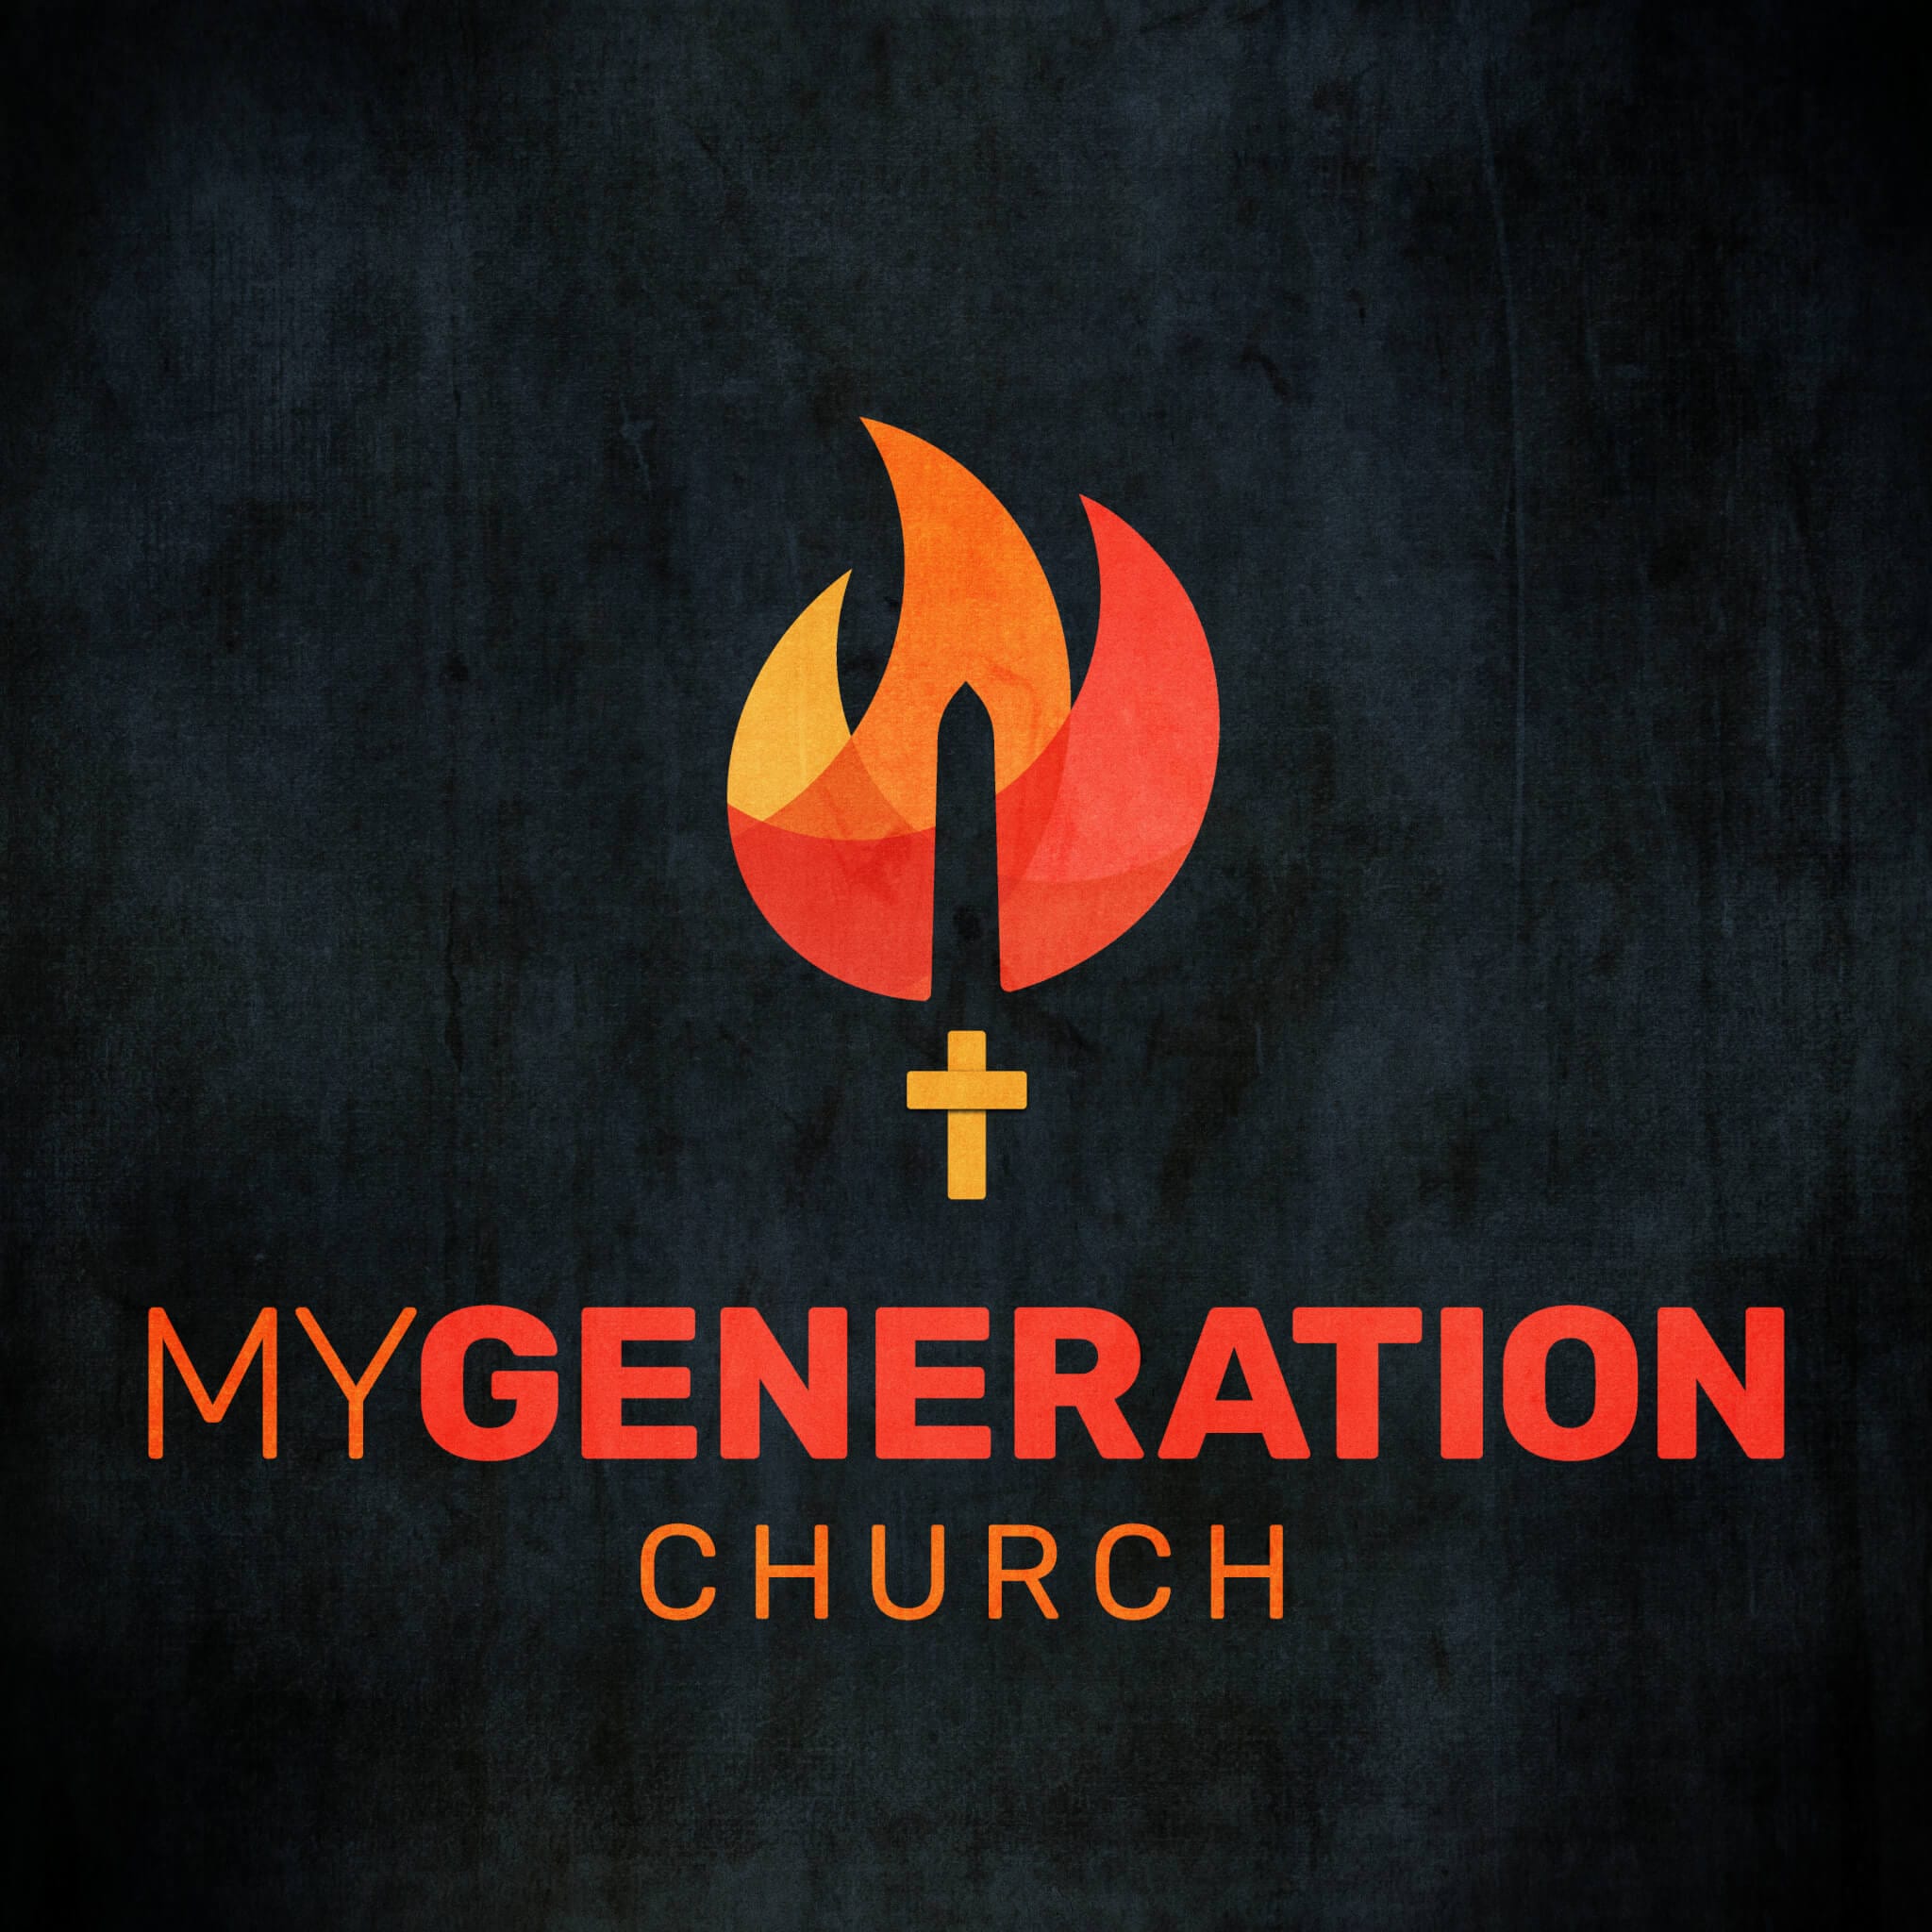 MyGeneration Church